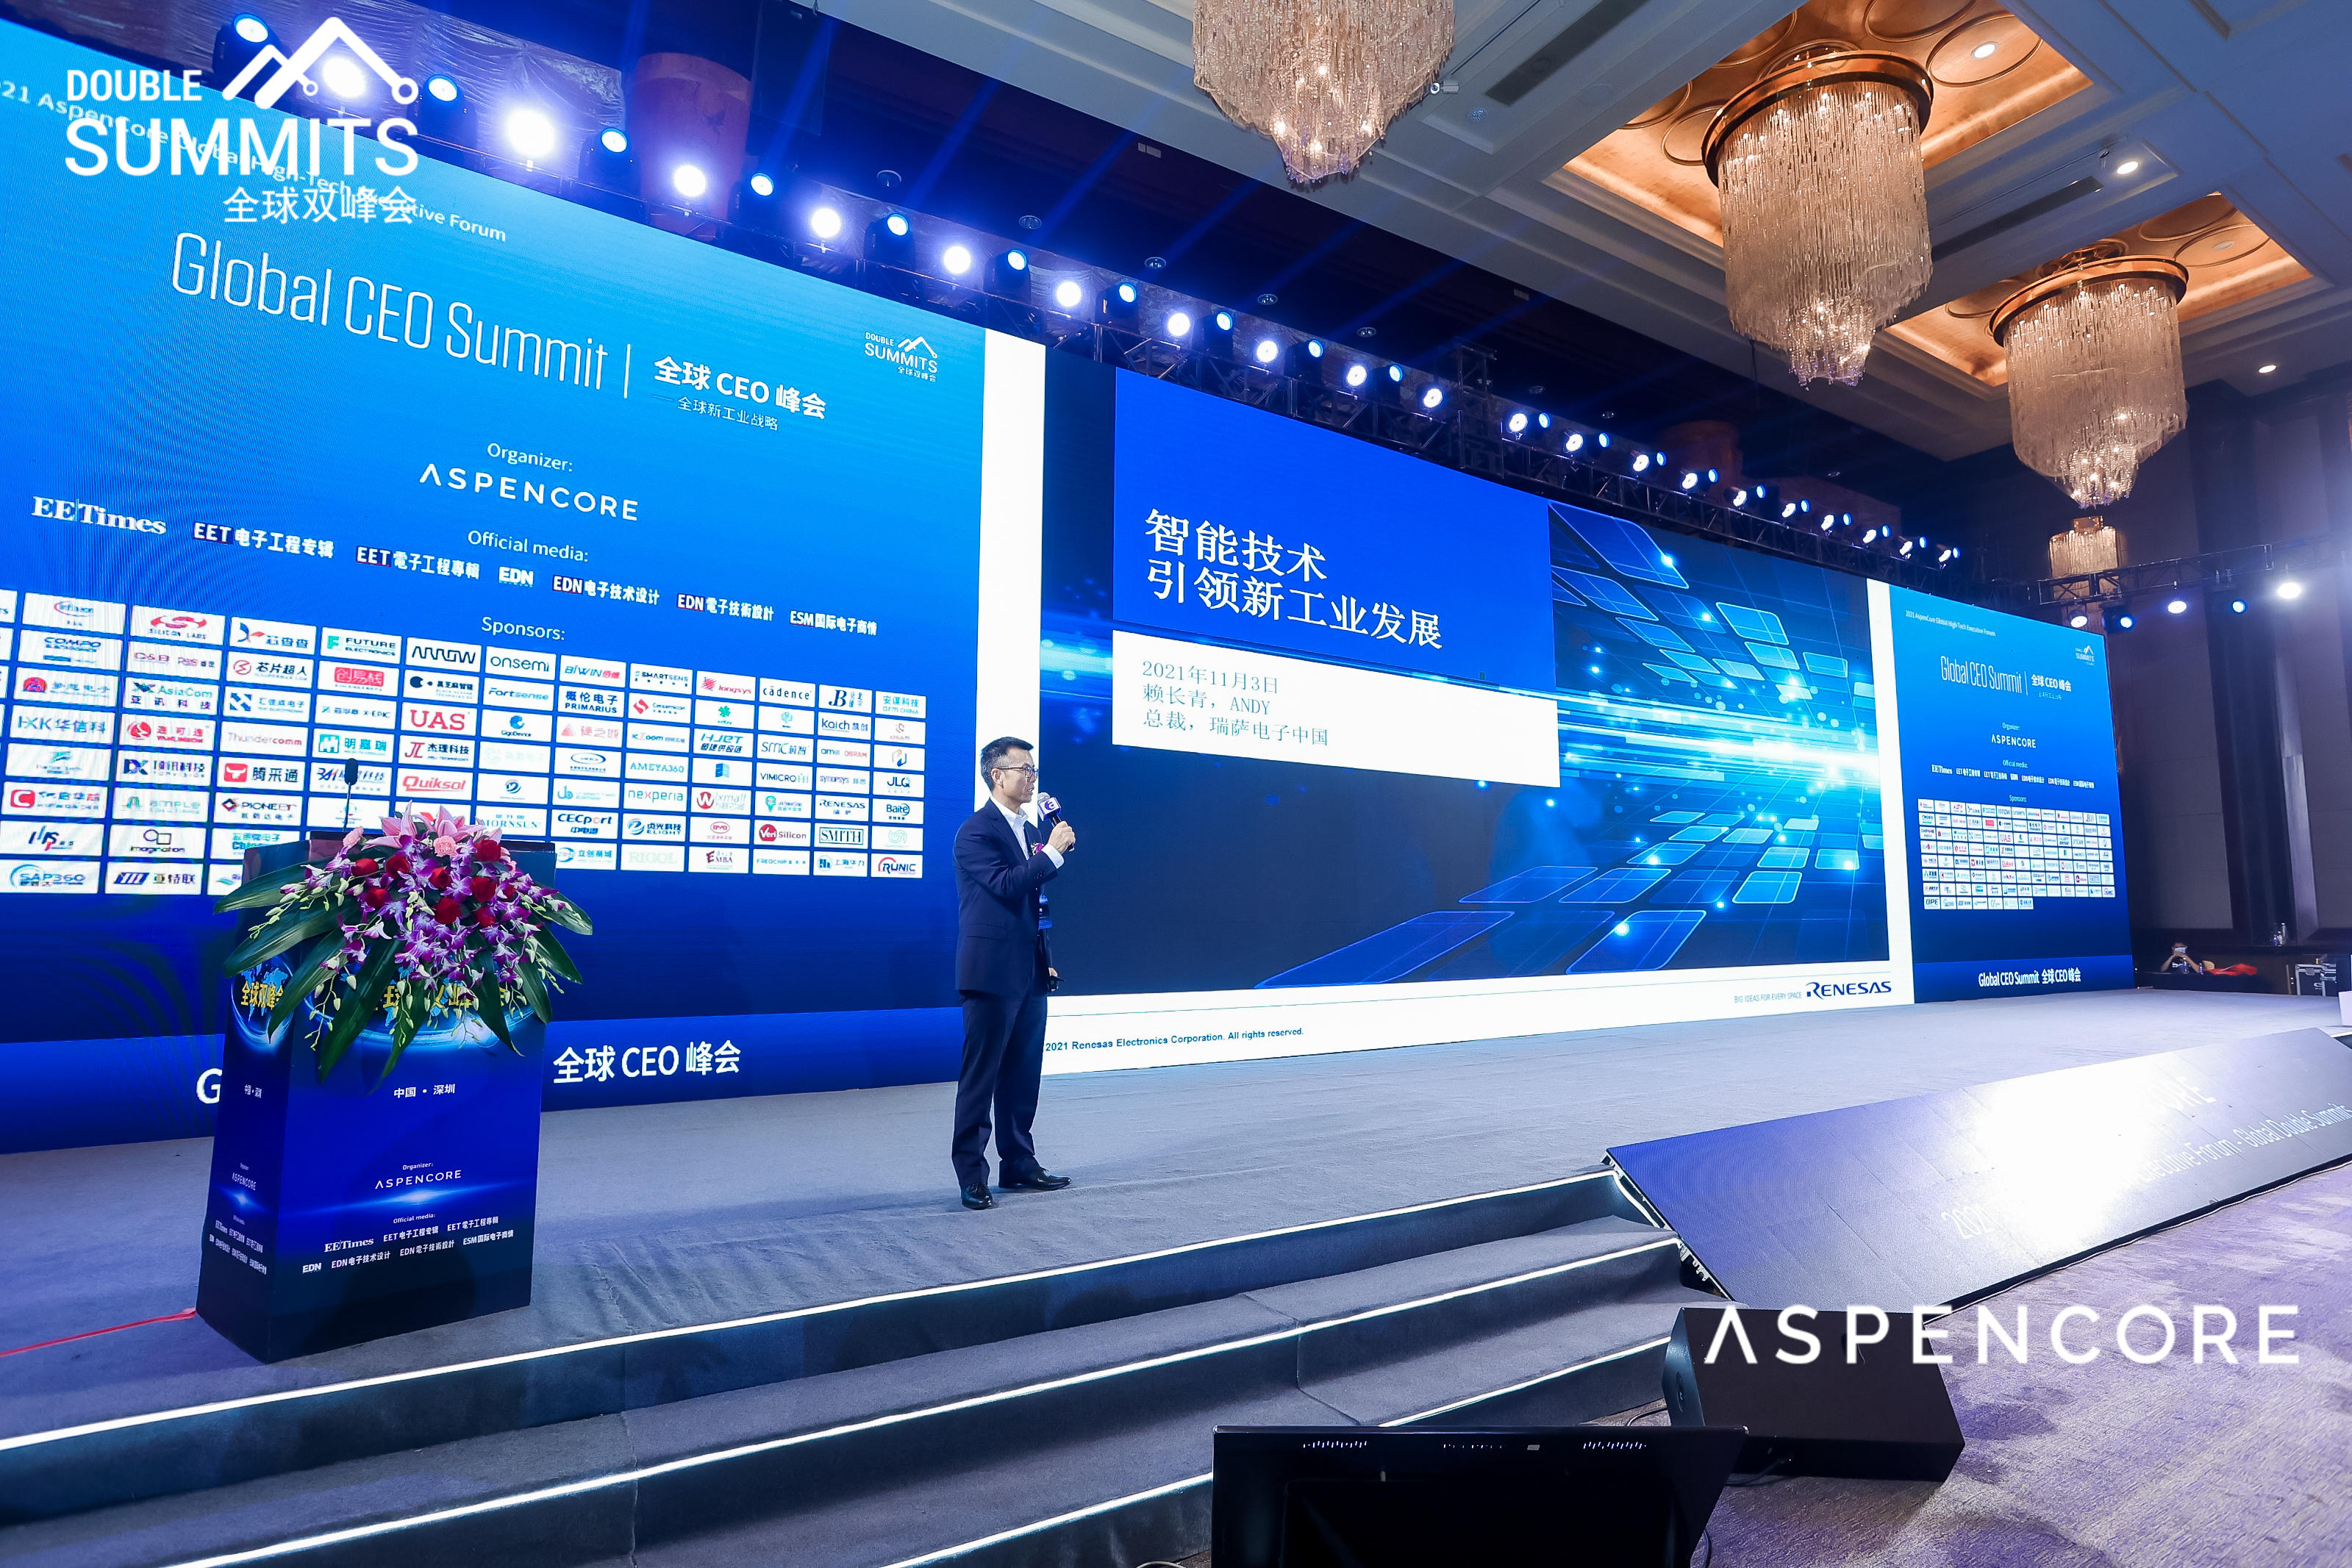 瑞萨电子中国总裁 赖长青 作主题演讲